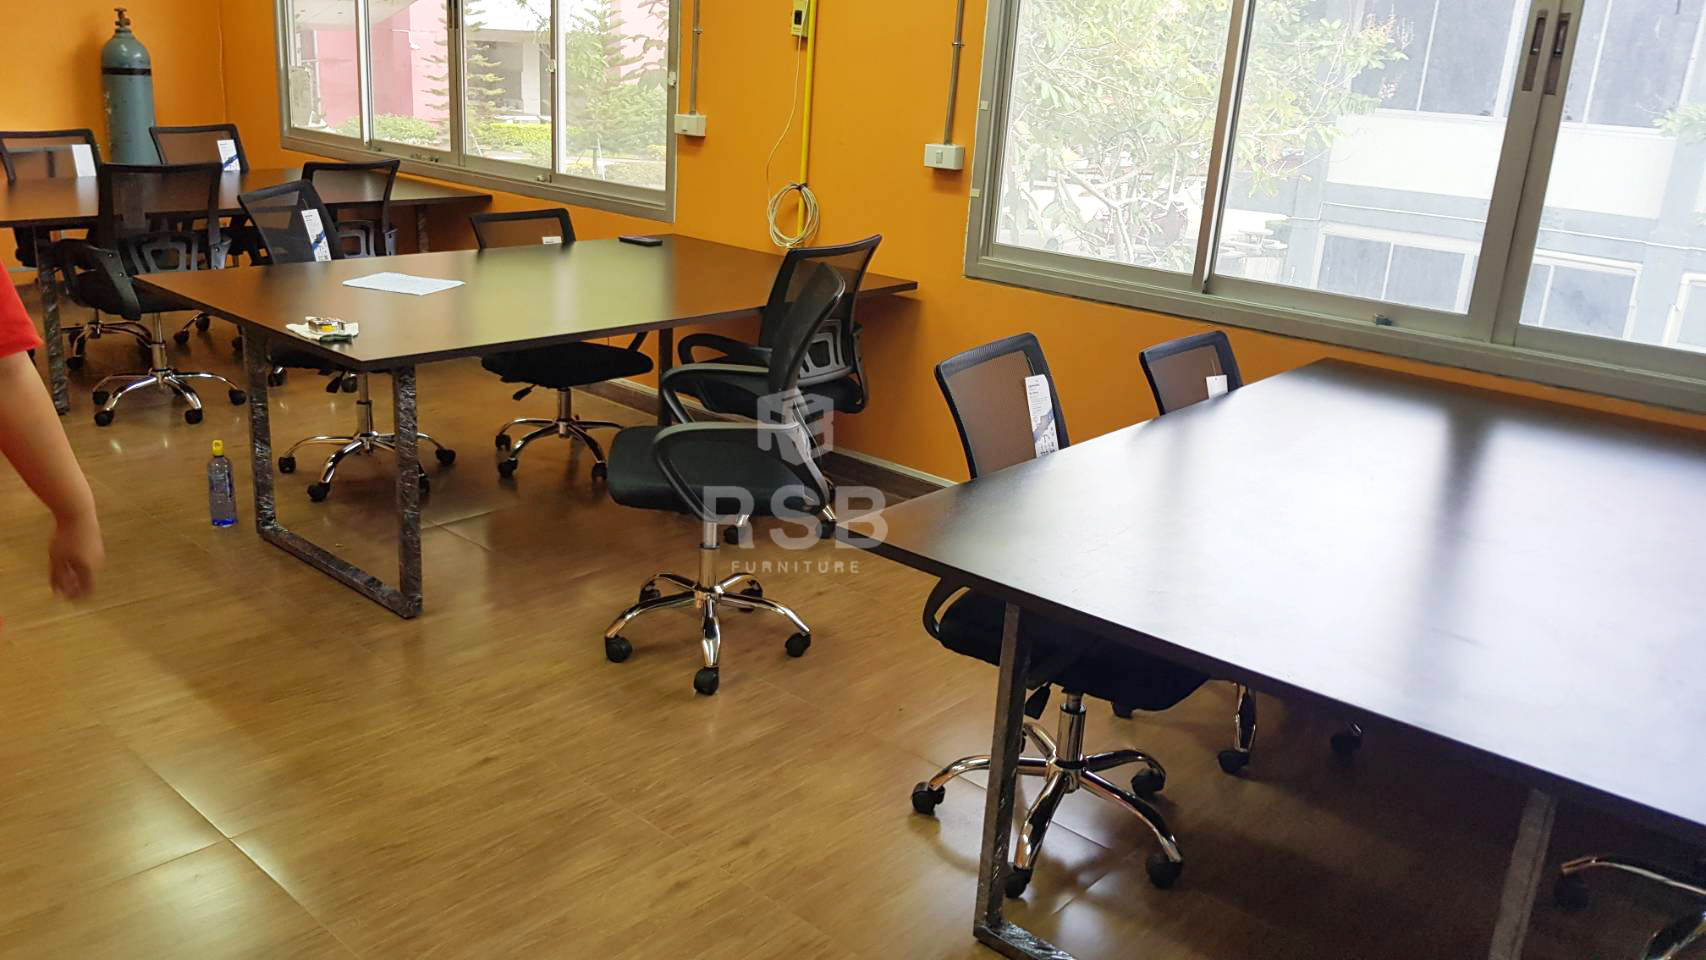 โซนห้องทำงานของบริษัทค่ะ ลูกค้าได้เลือกโต๊ะประชุมทรงสี่เหลี่ยม รหัส 793 ขาโต๊ะรุ่นนี้ถูกดีไซน์ทรงขาเหล็ก ตัว C และเก้าอี้สำนักงาน รหัส 673